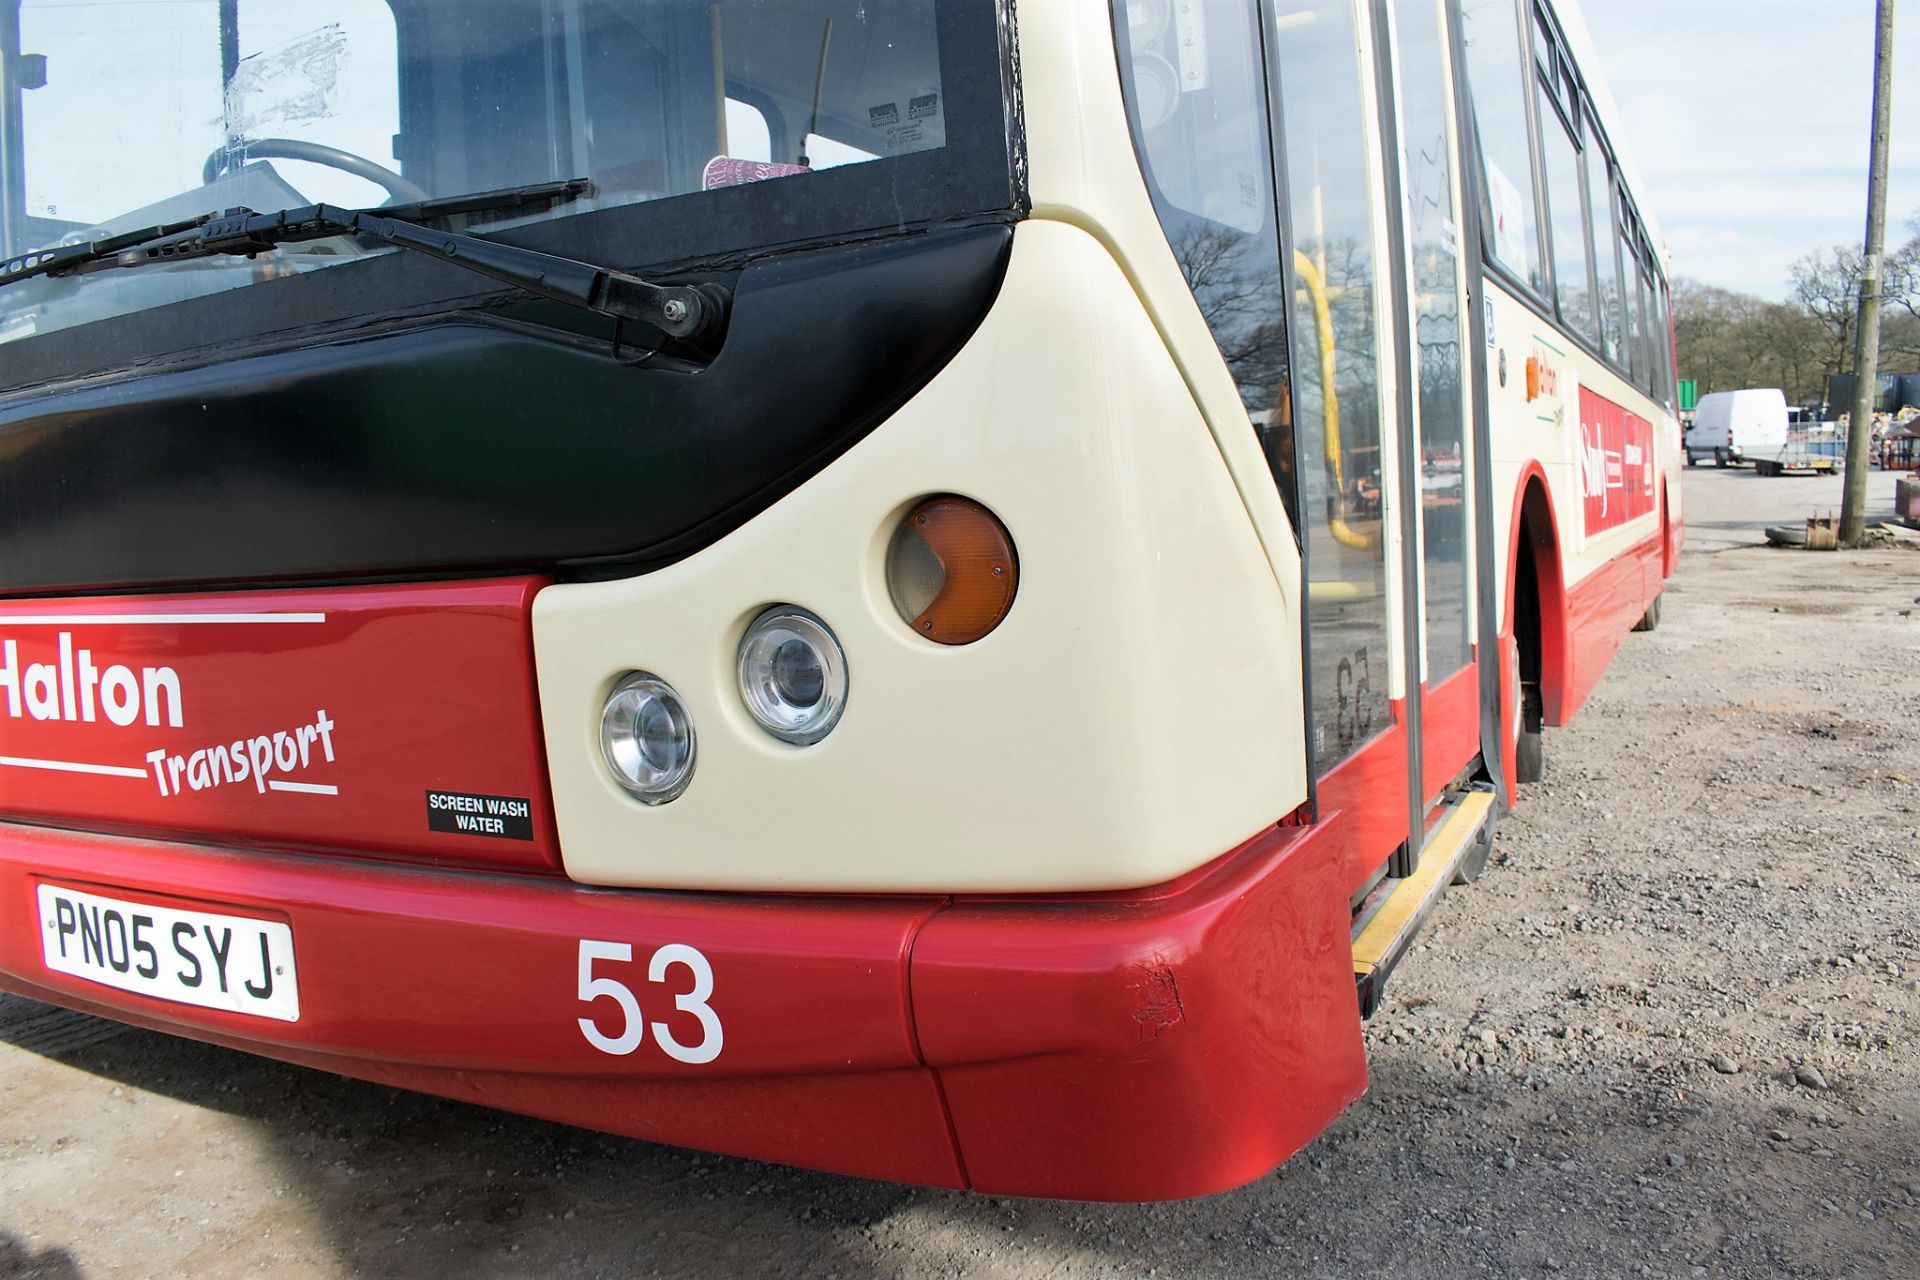 Dennis Super Dart 43 seat single deck service bus Registration Number: PN05 SYJ Date of - Image 7 of 14